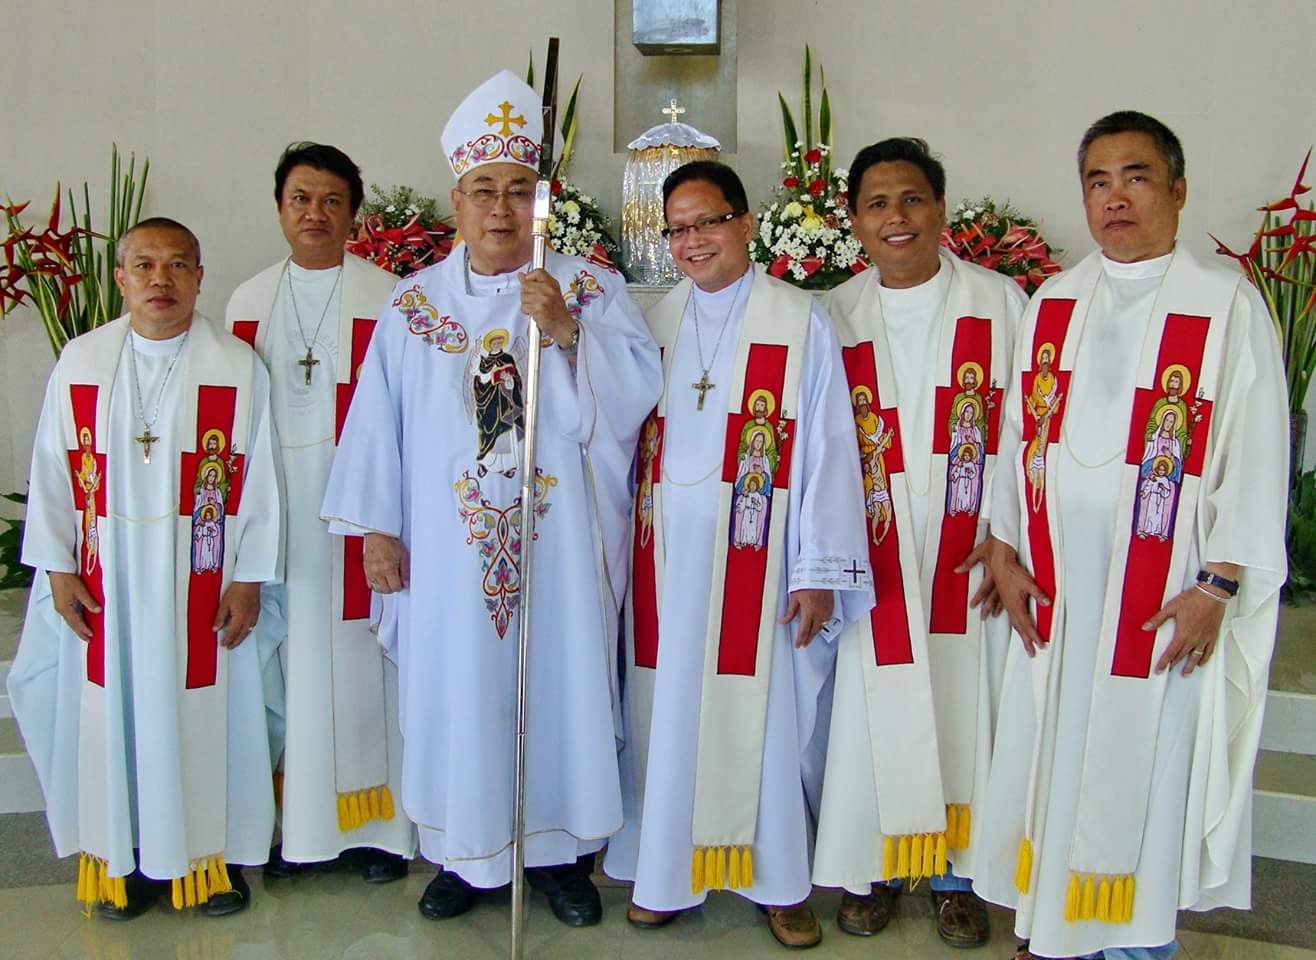 Bohol’s Bishop Emeritus Christian Vicente Noel dies